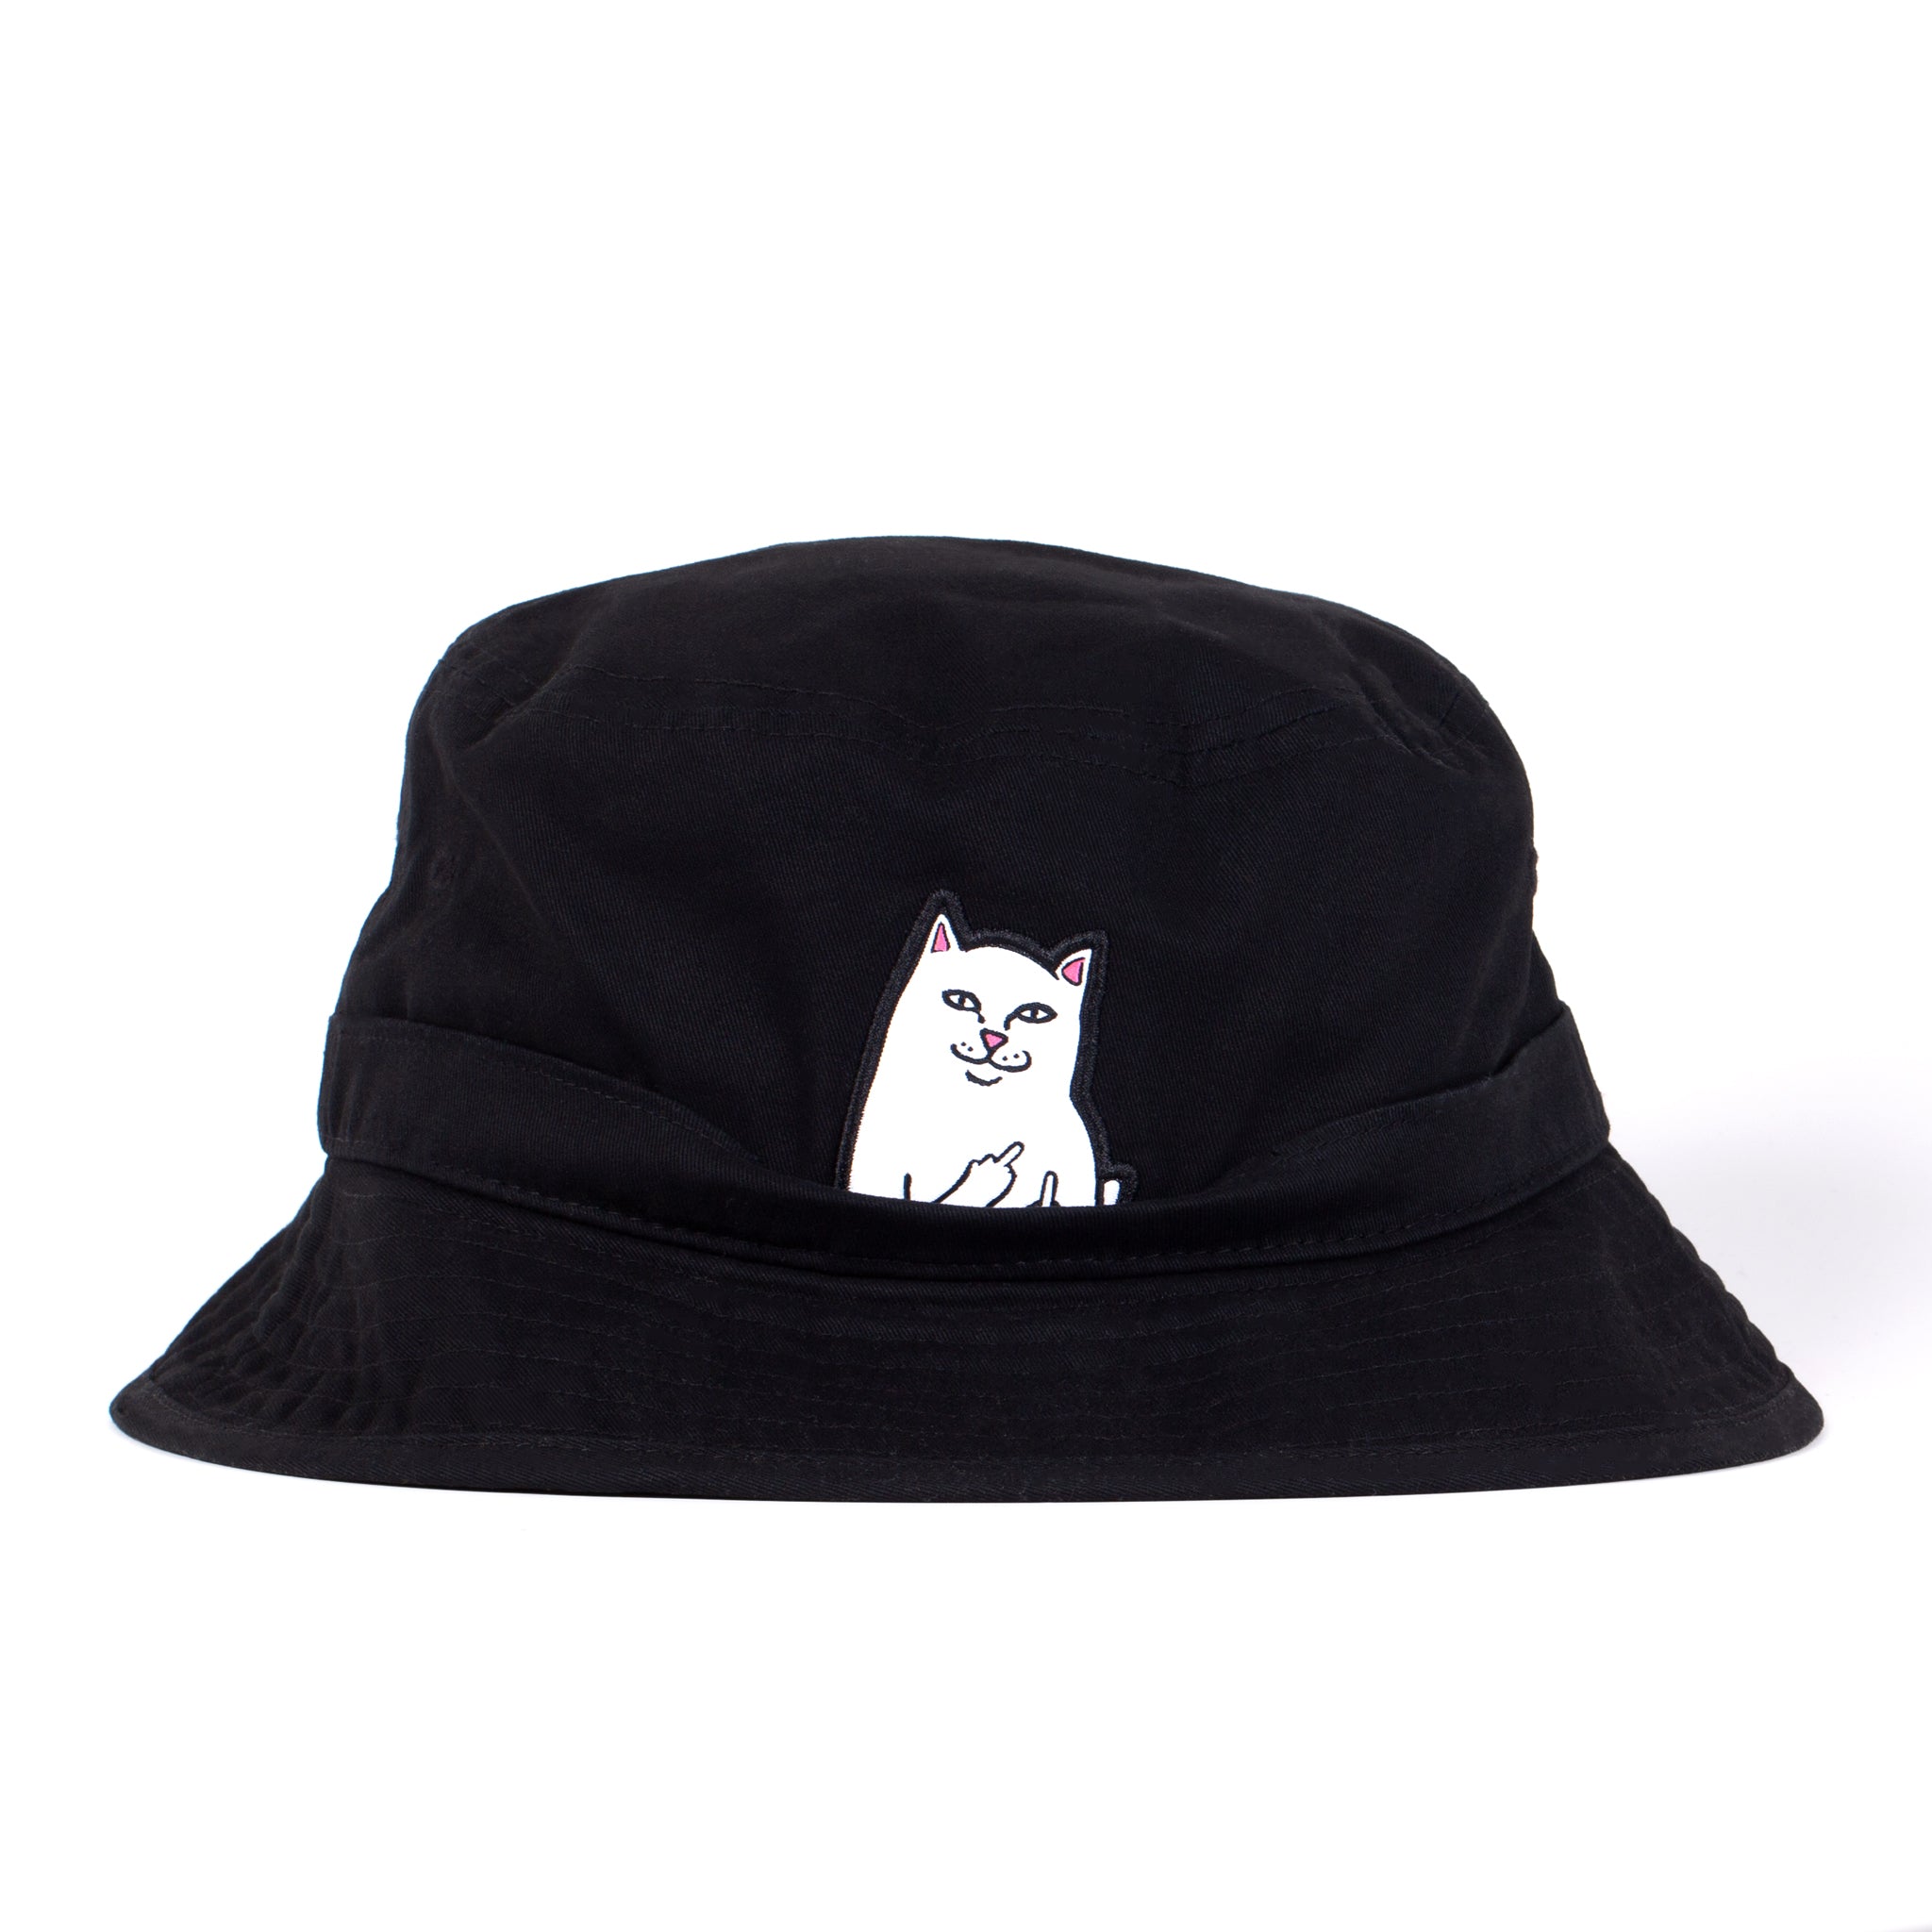 Lord Nermal Bucket Hat (Black)